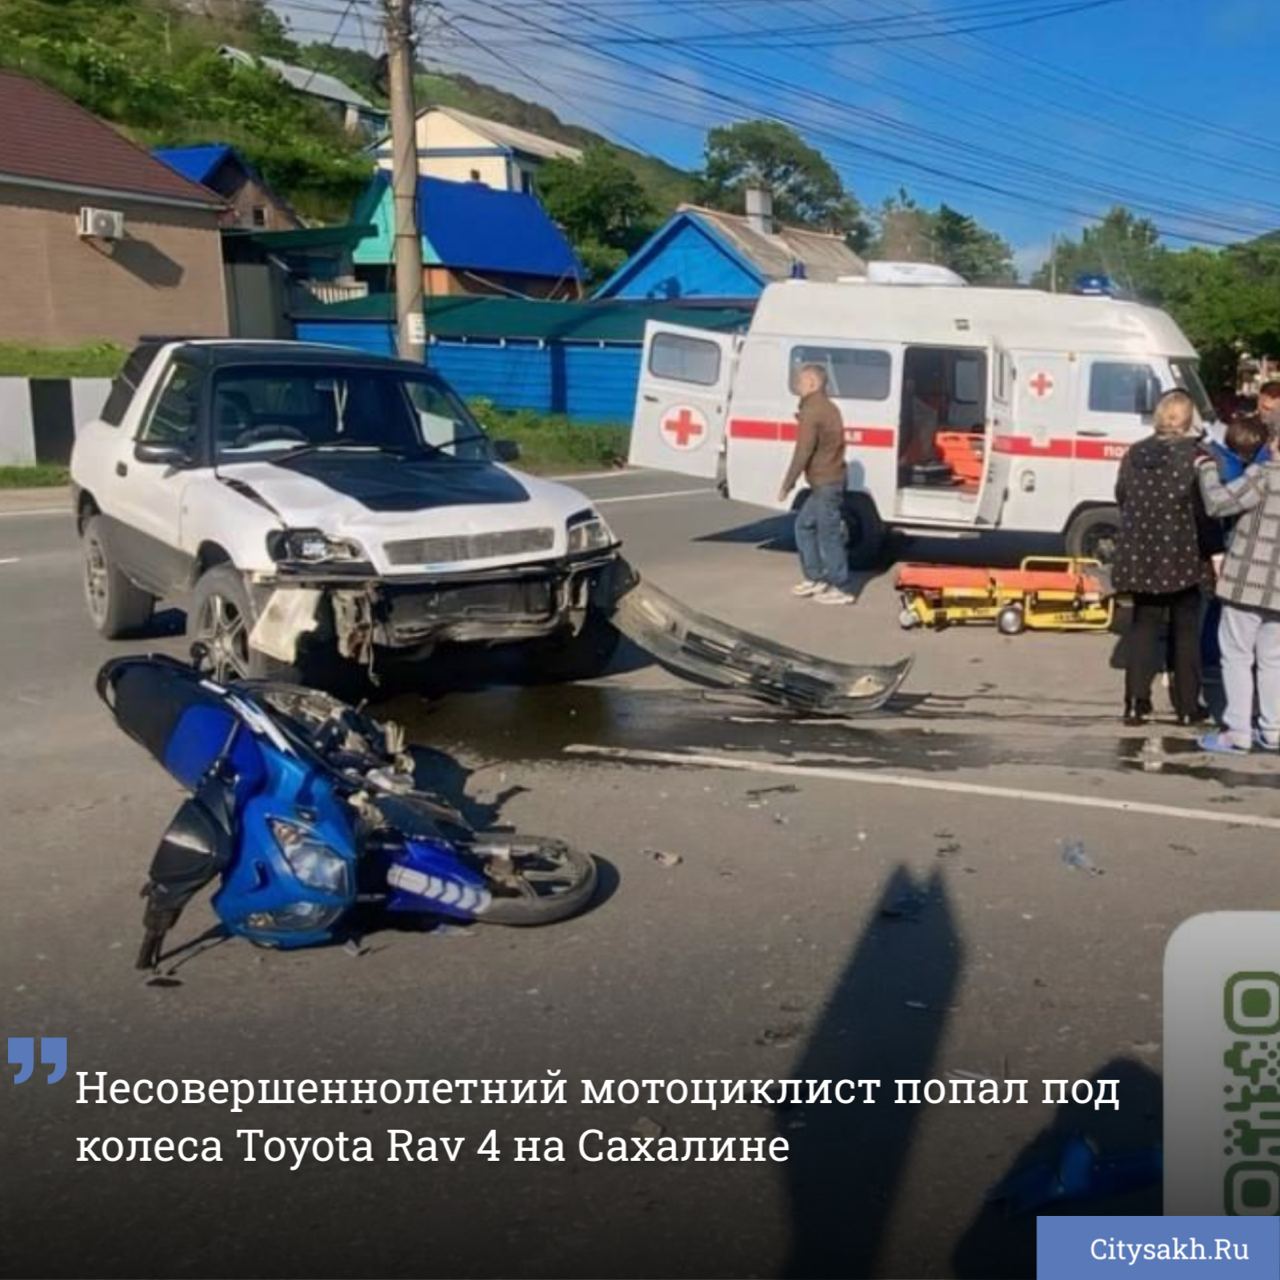 Несовершеннолетний мотоциклист попал под колеса Toyota Rav 4 на Сахалине  В результате аварии школьникам потребовалась медицинская помощь